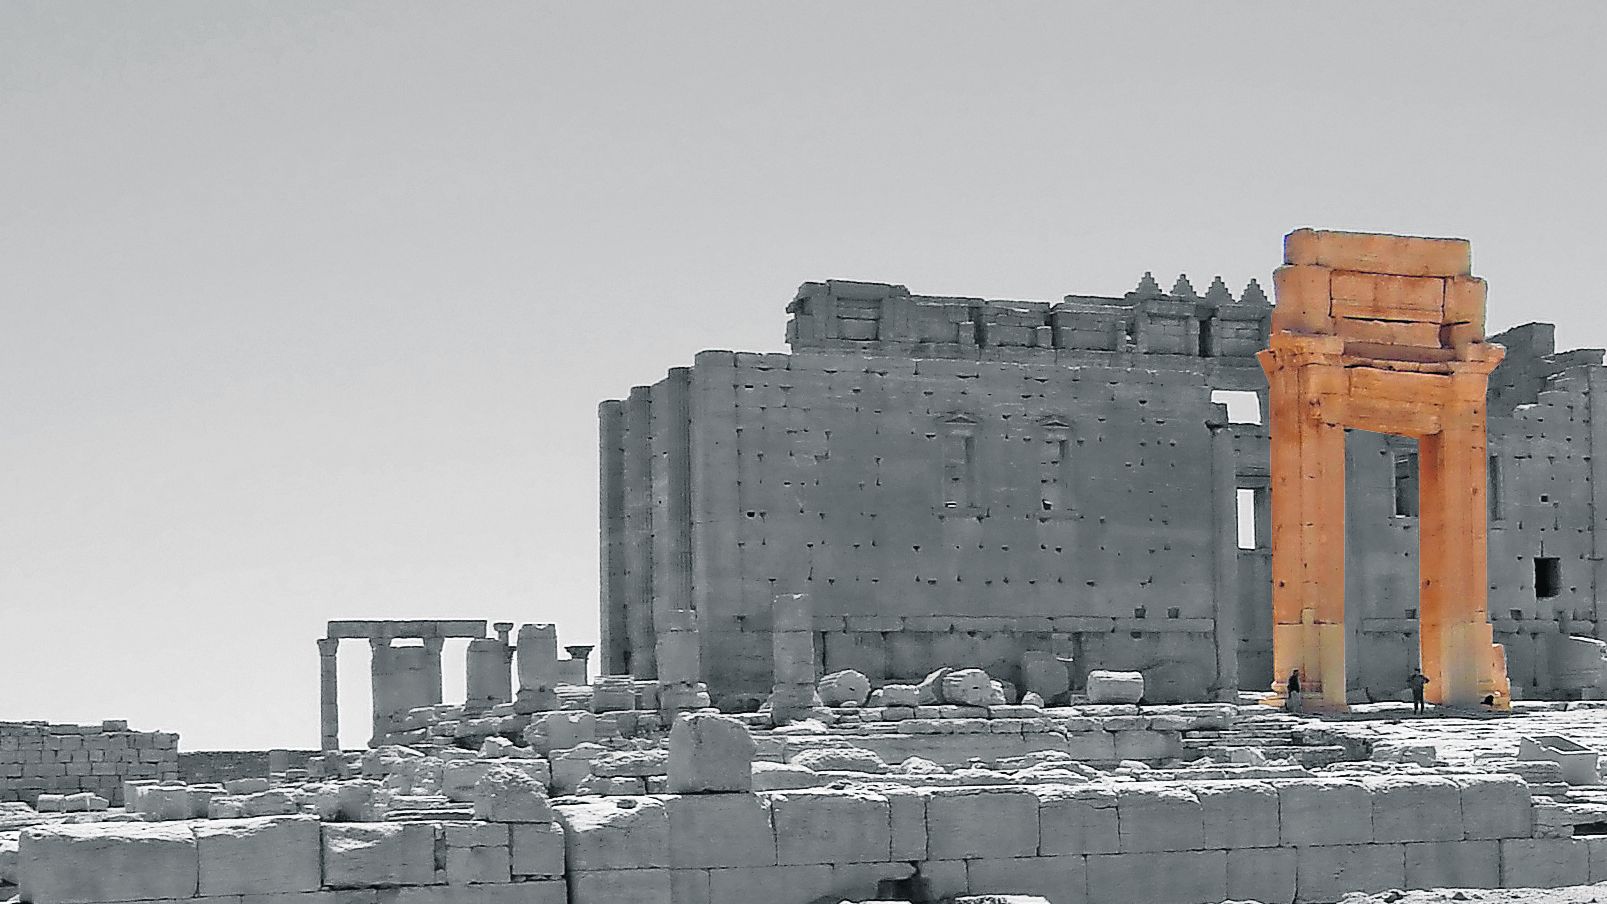 Dieses Bild zeigt, wie der Eingangsbereich des Baal-Tempels vor der Zerstörung aussah. Einzig die Säulen blieben stehen. (c) www.pixabay.com